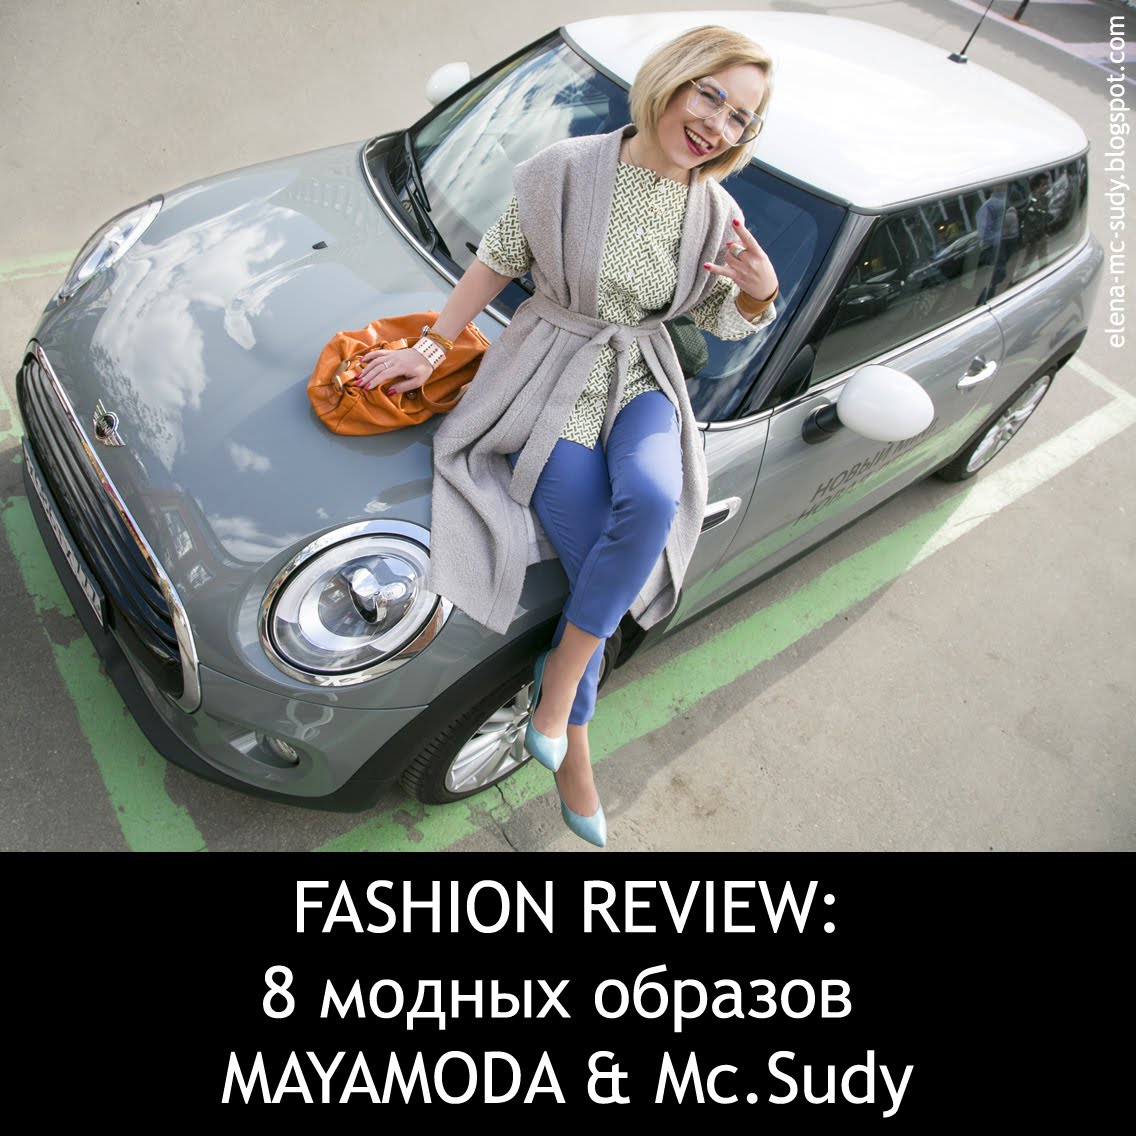 Отзыв о российской марке одежды MAYAMODA